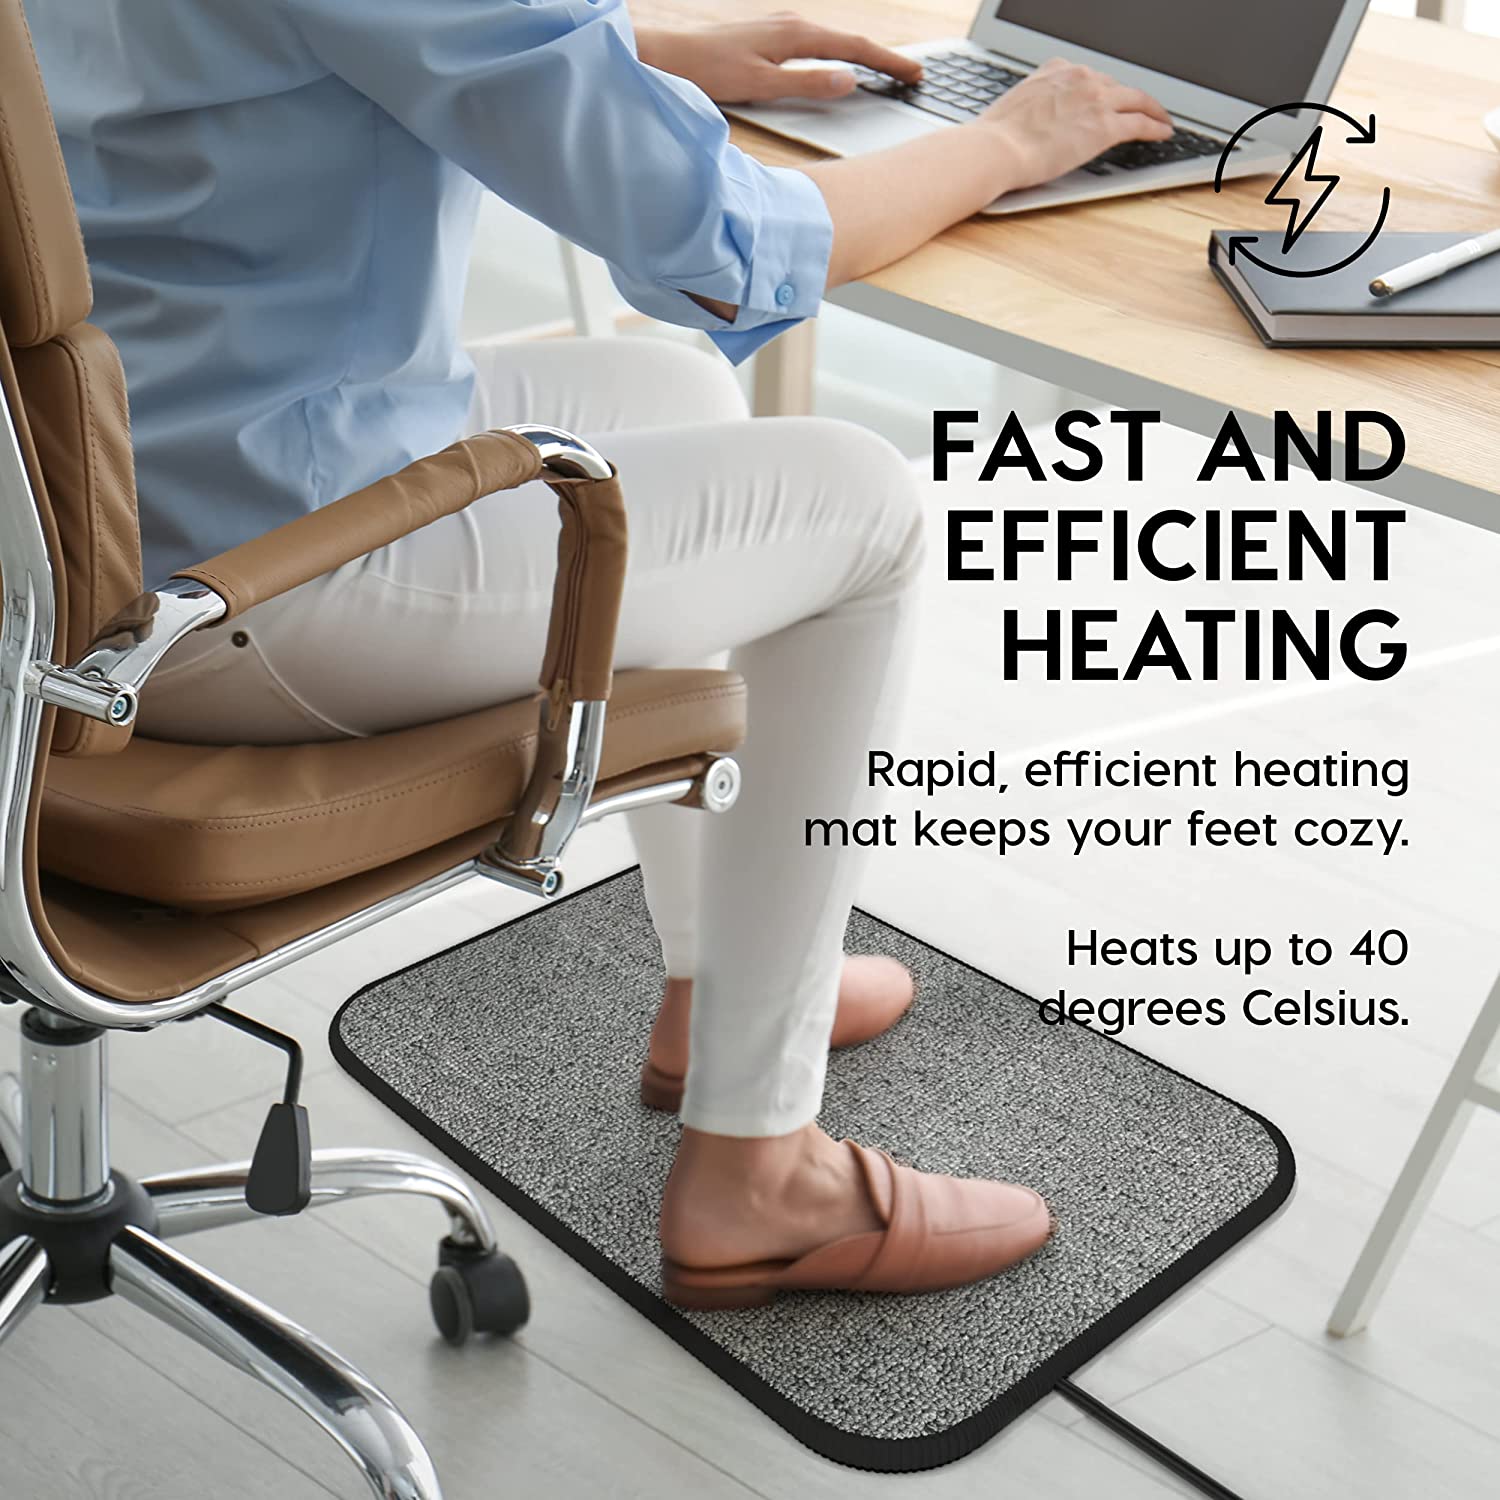 New Hot Sale Heated Floor Mat Foot Warmer Under Desk Heated Feet Rest